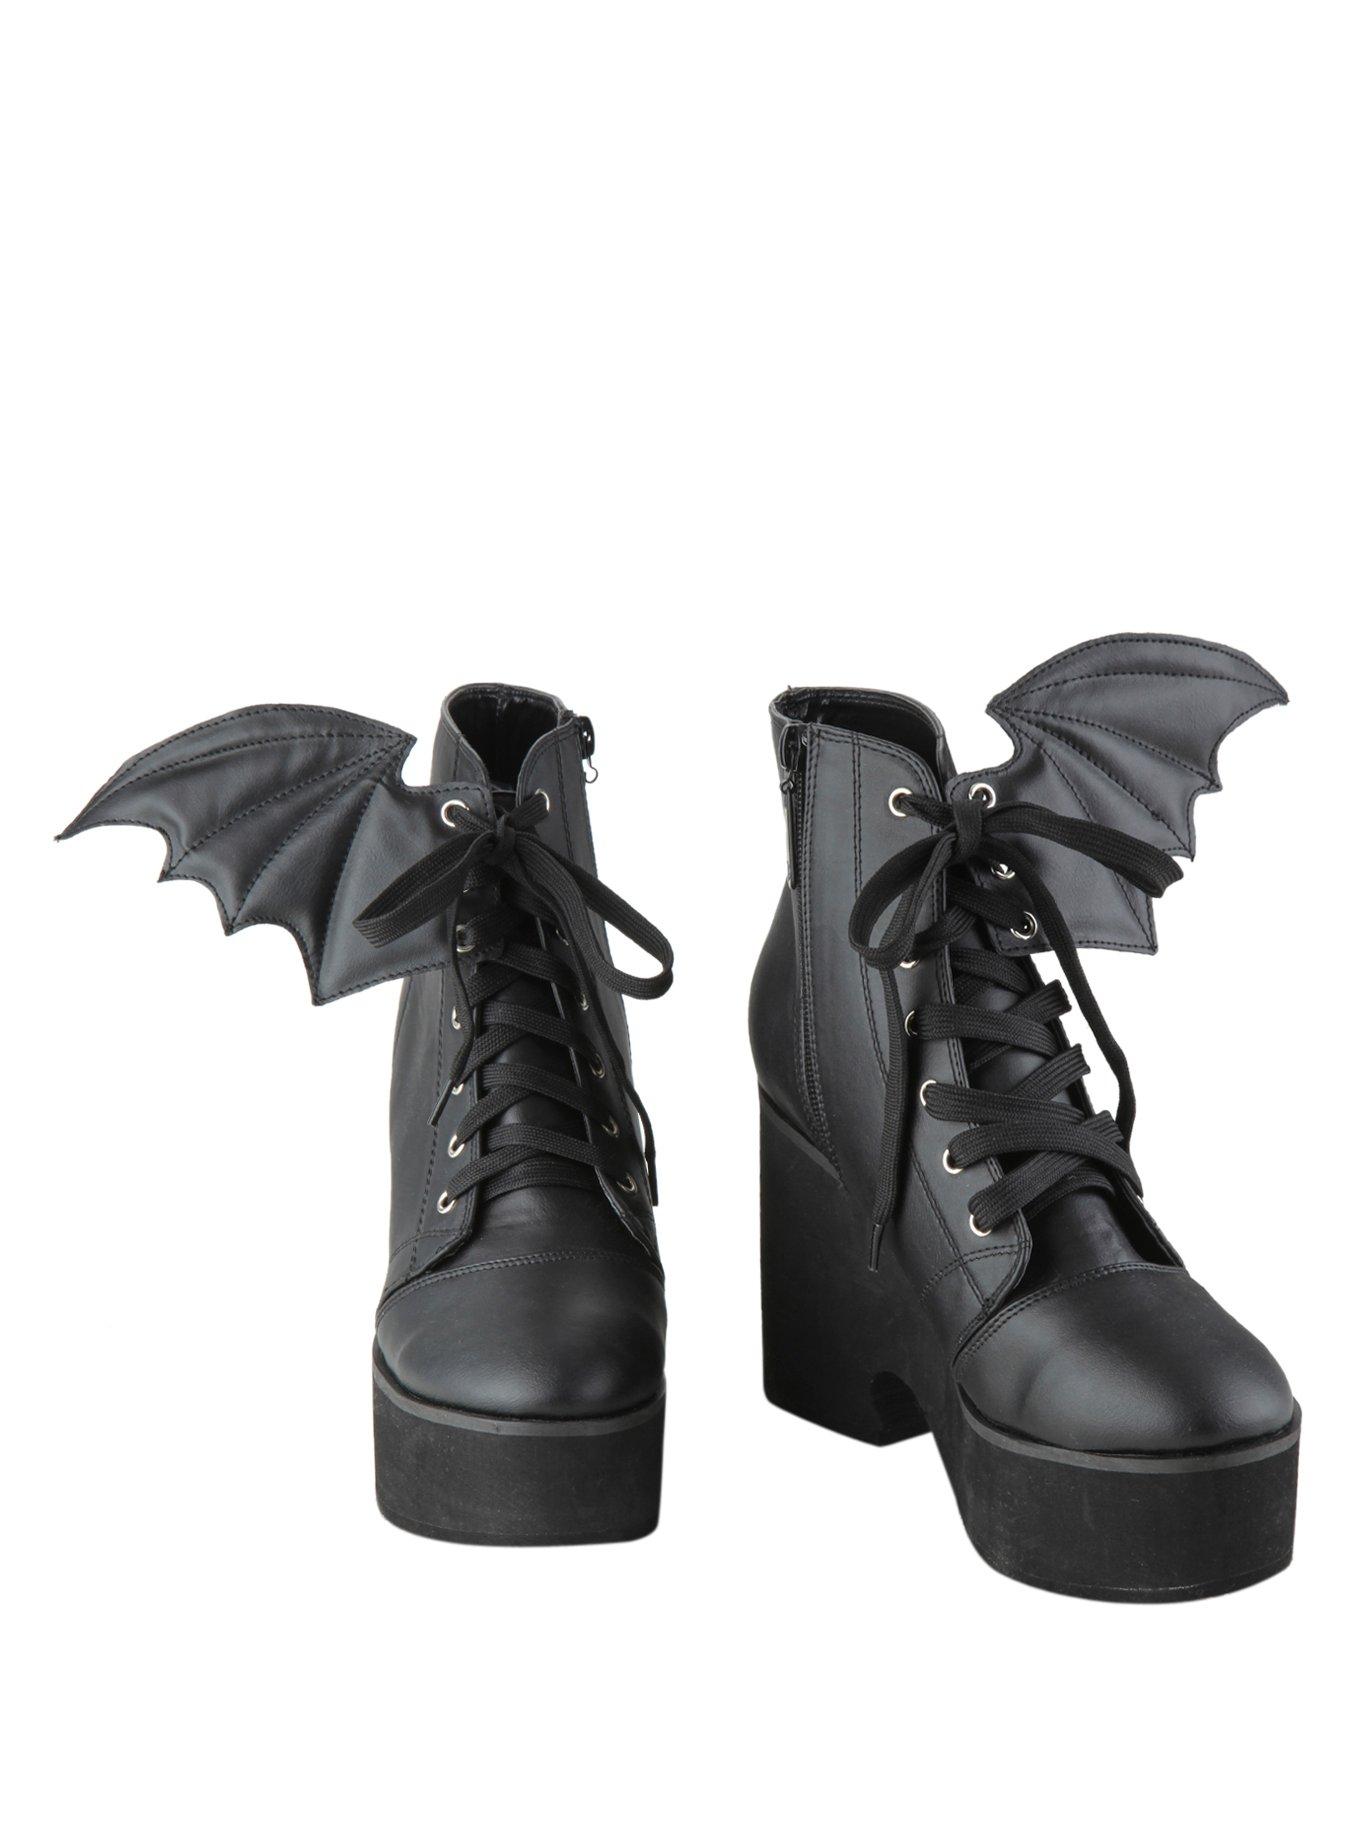 Iron Fist Bat Wing Boots, BLACK, hi-res